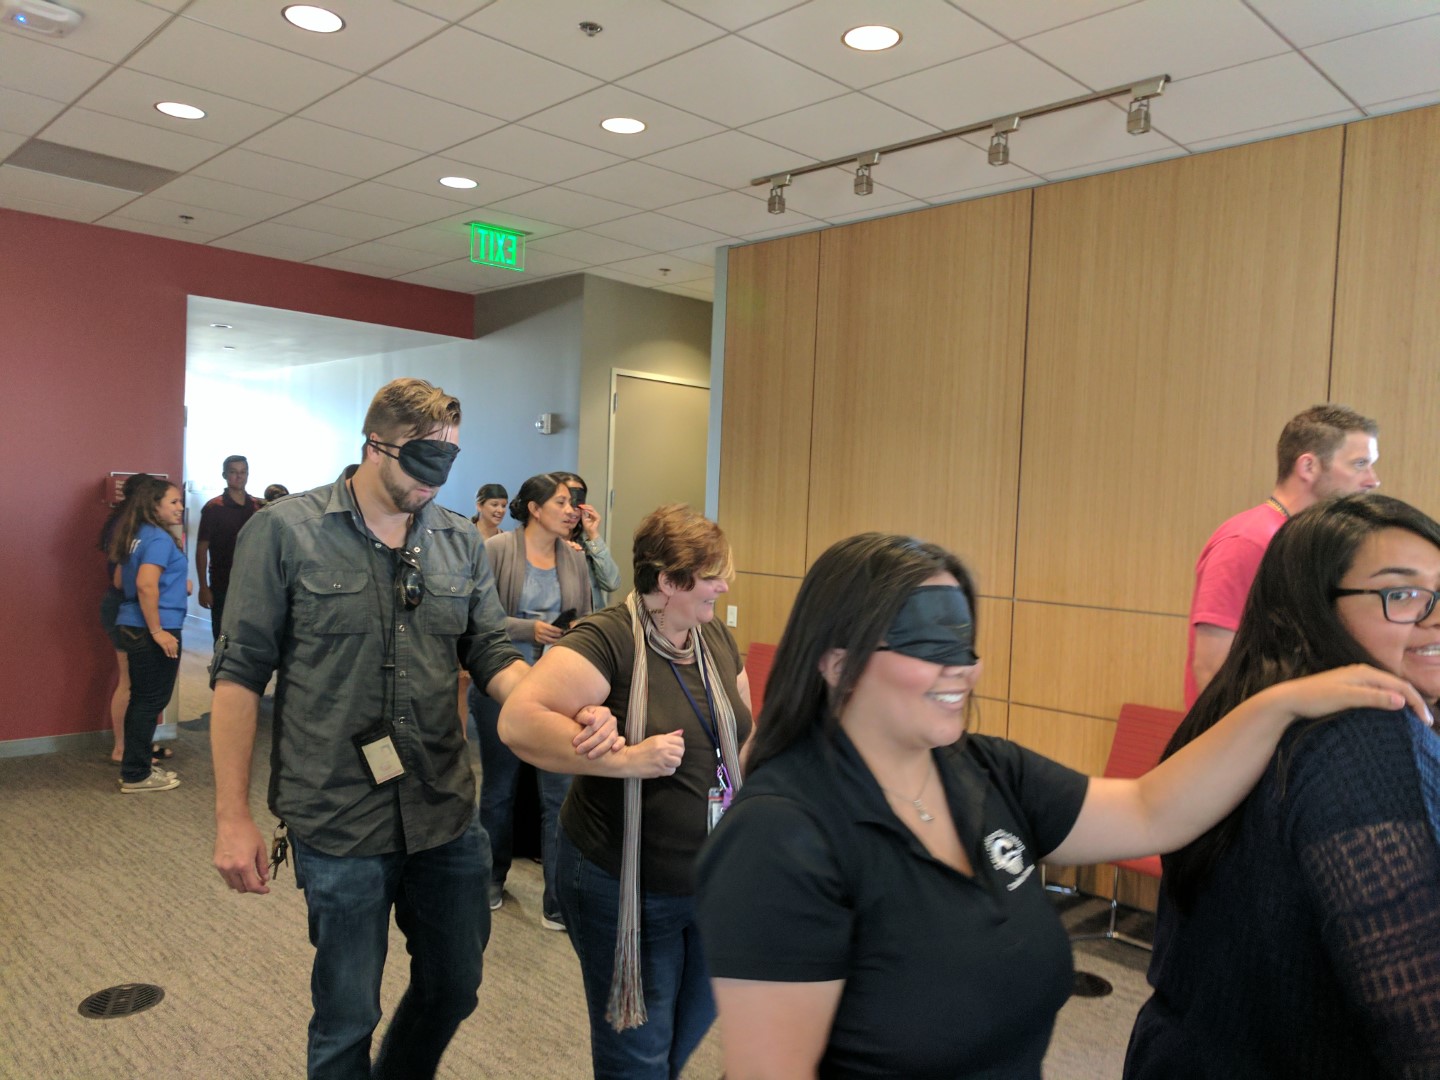 People wearing blindfolds walking side-by-side with people not wearing blindfolds